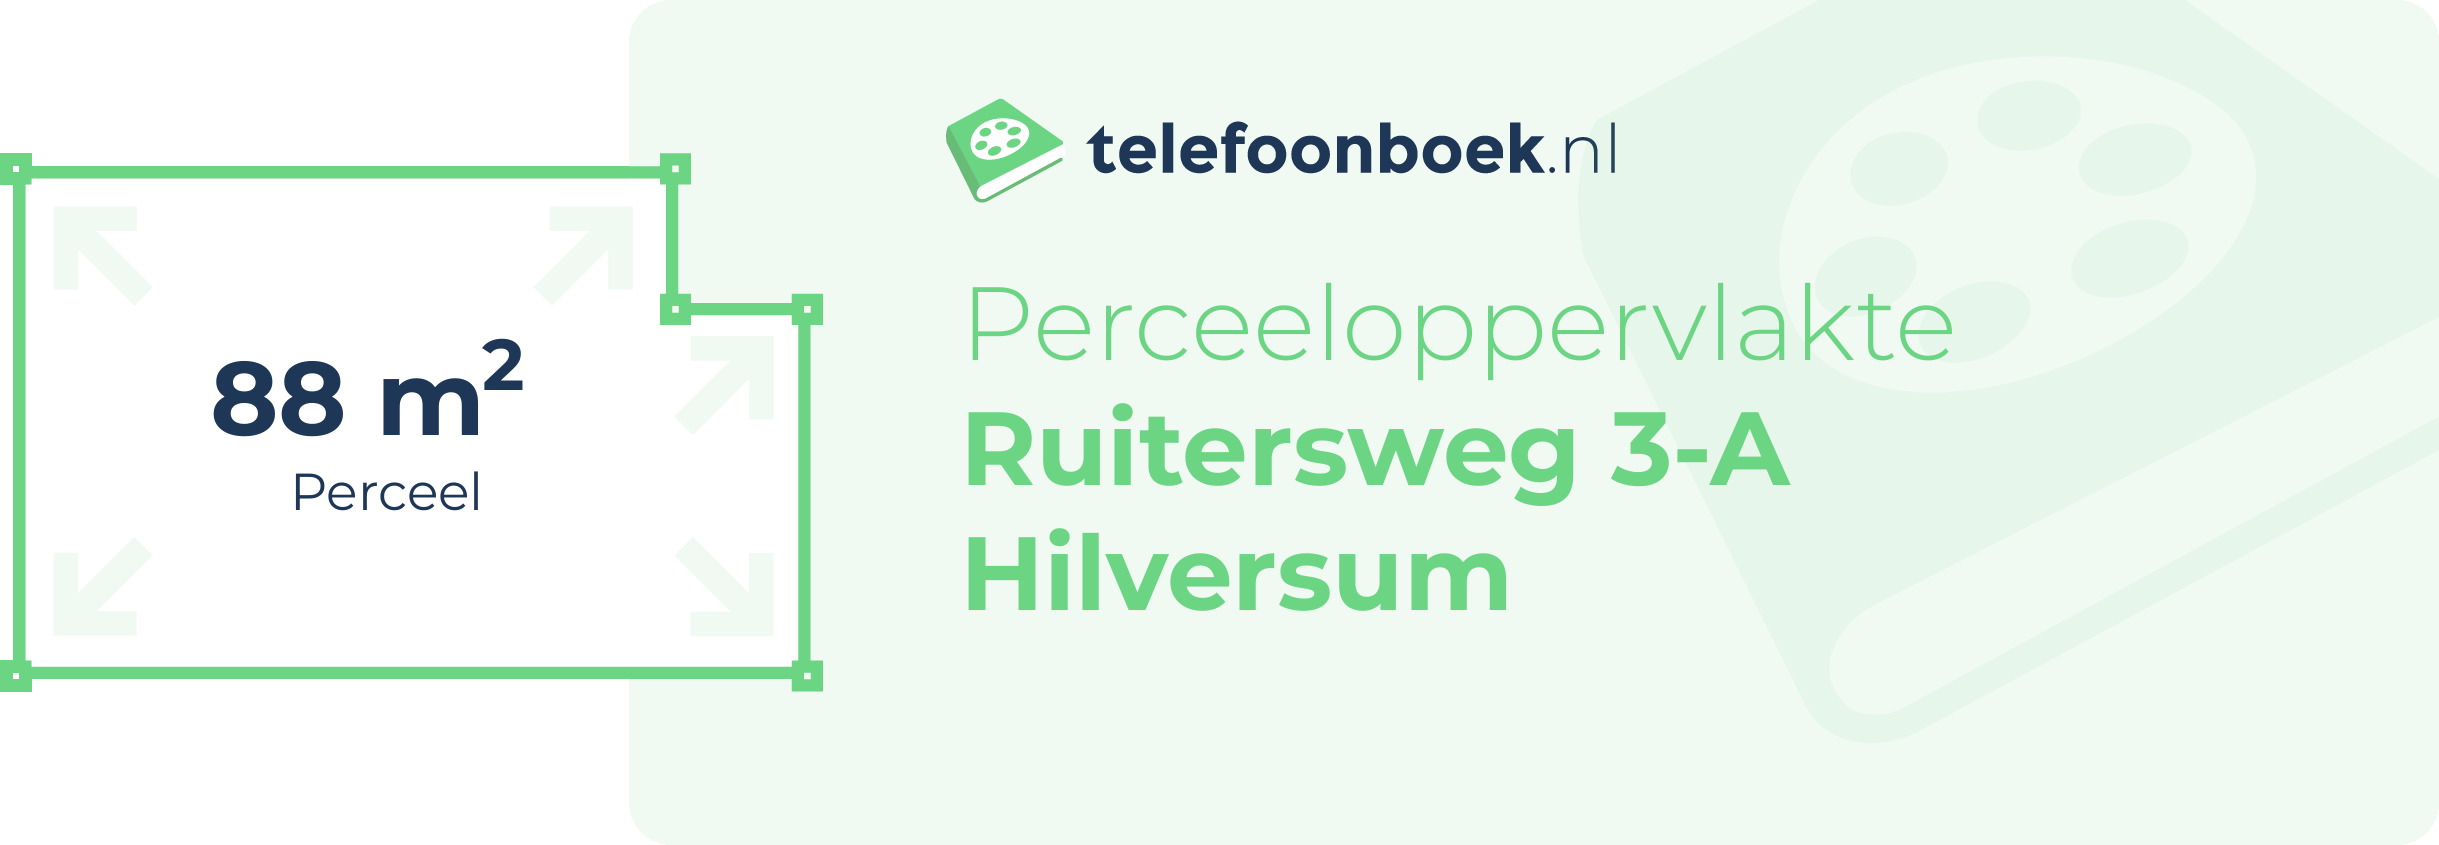 Perceeloppervlakte Ruitersweg 3-A Hilversum